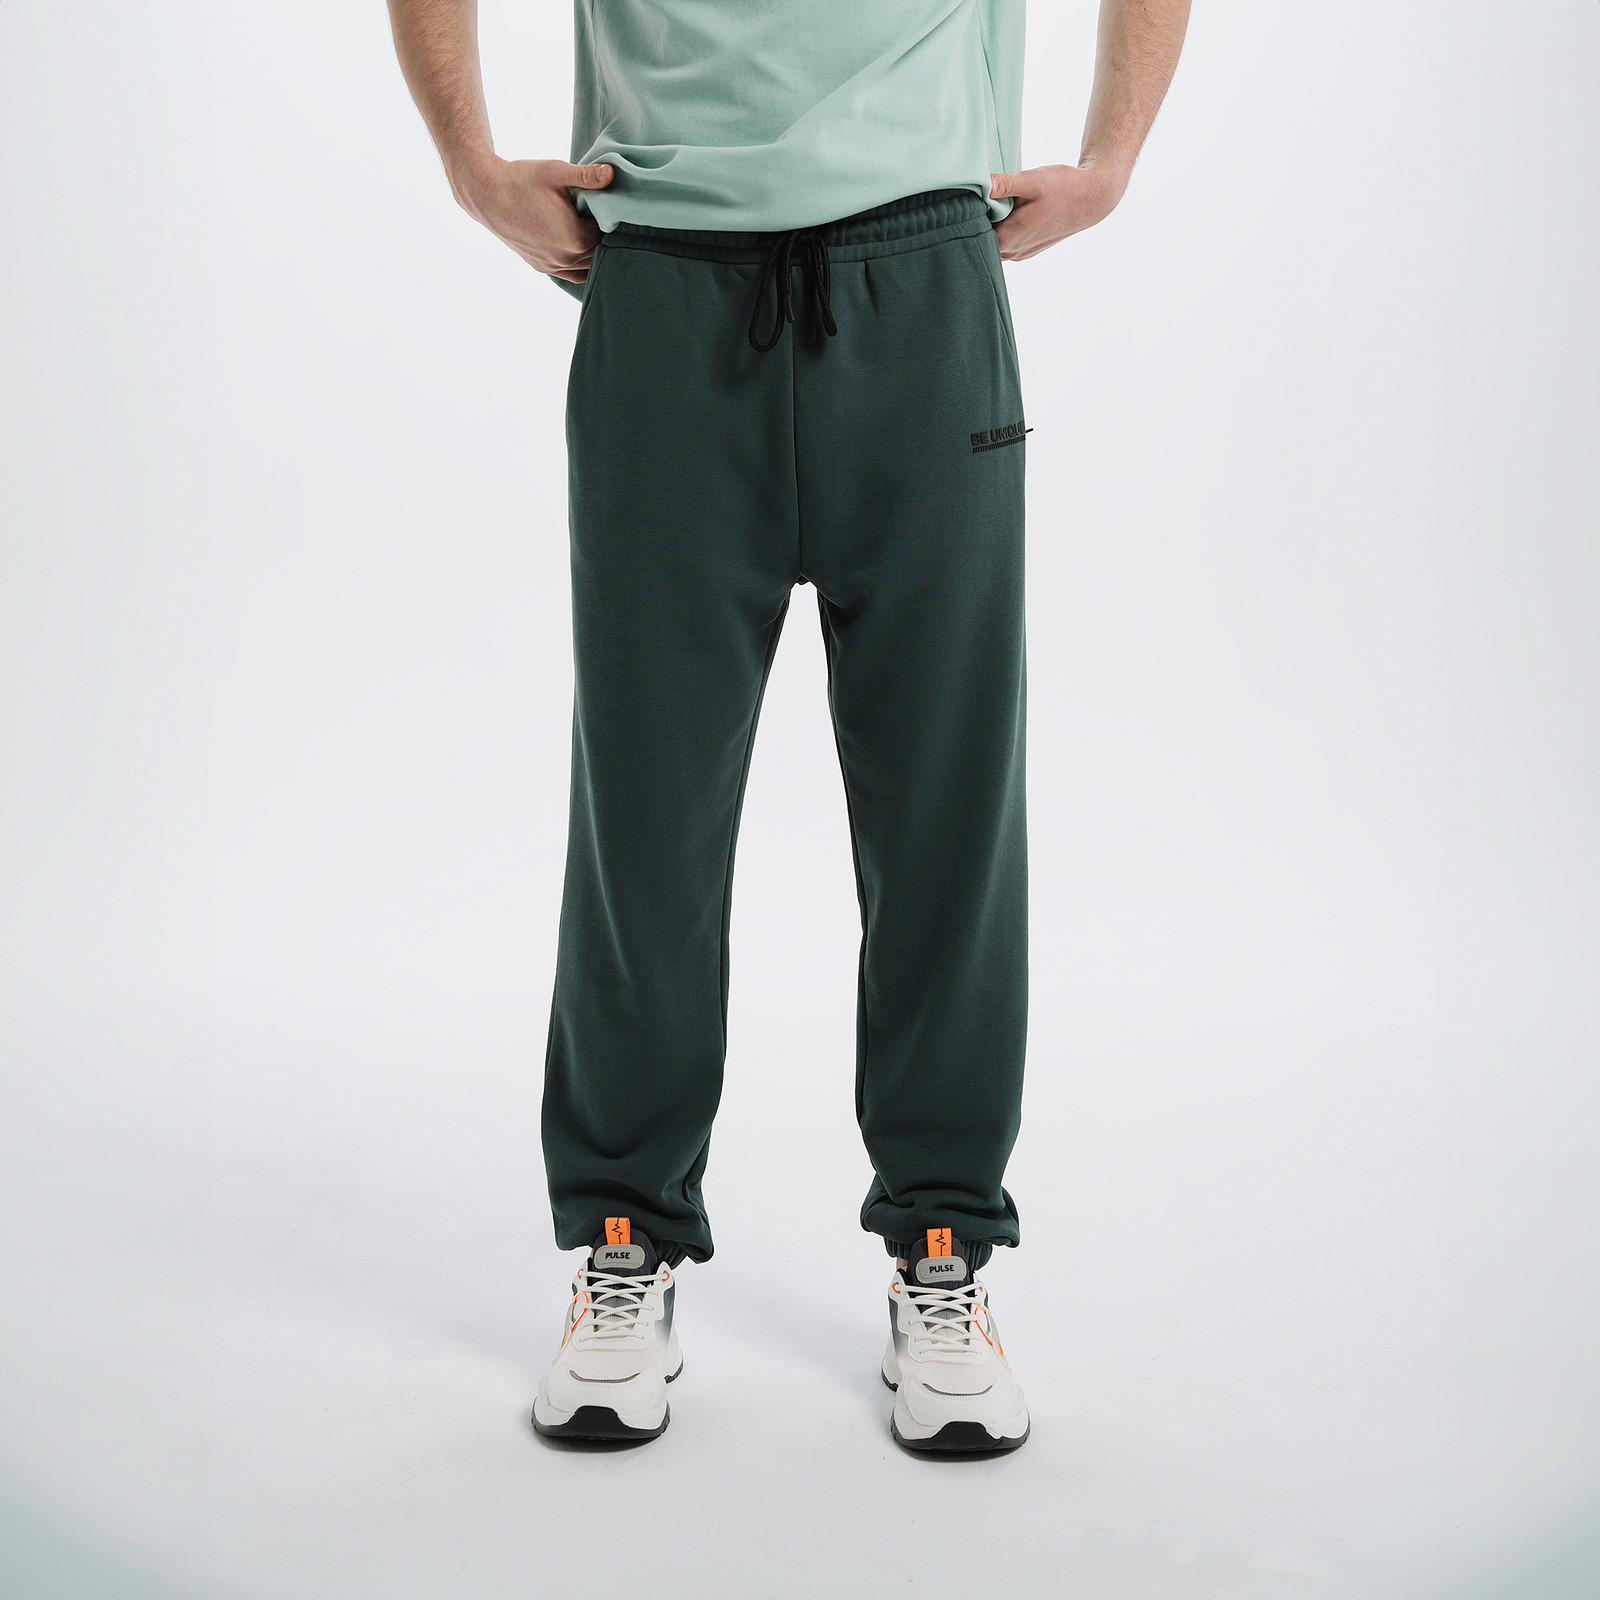 Спортивные брюки мужские PULSE 41MP-P33 зеленые XL